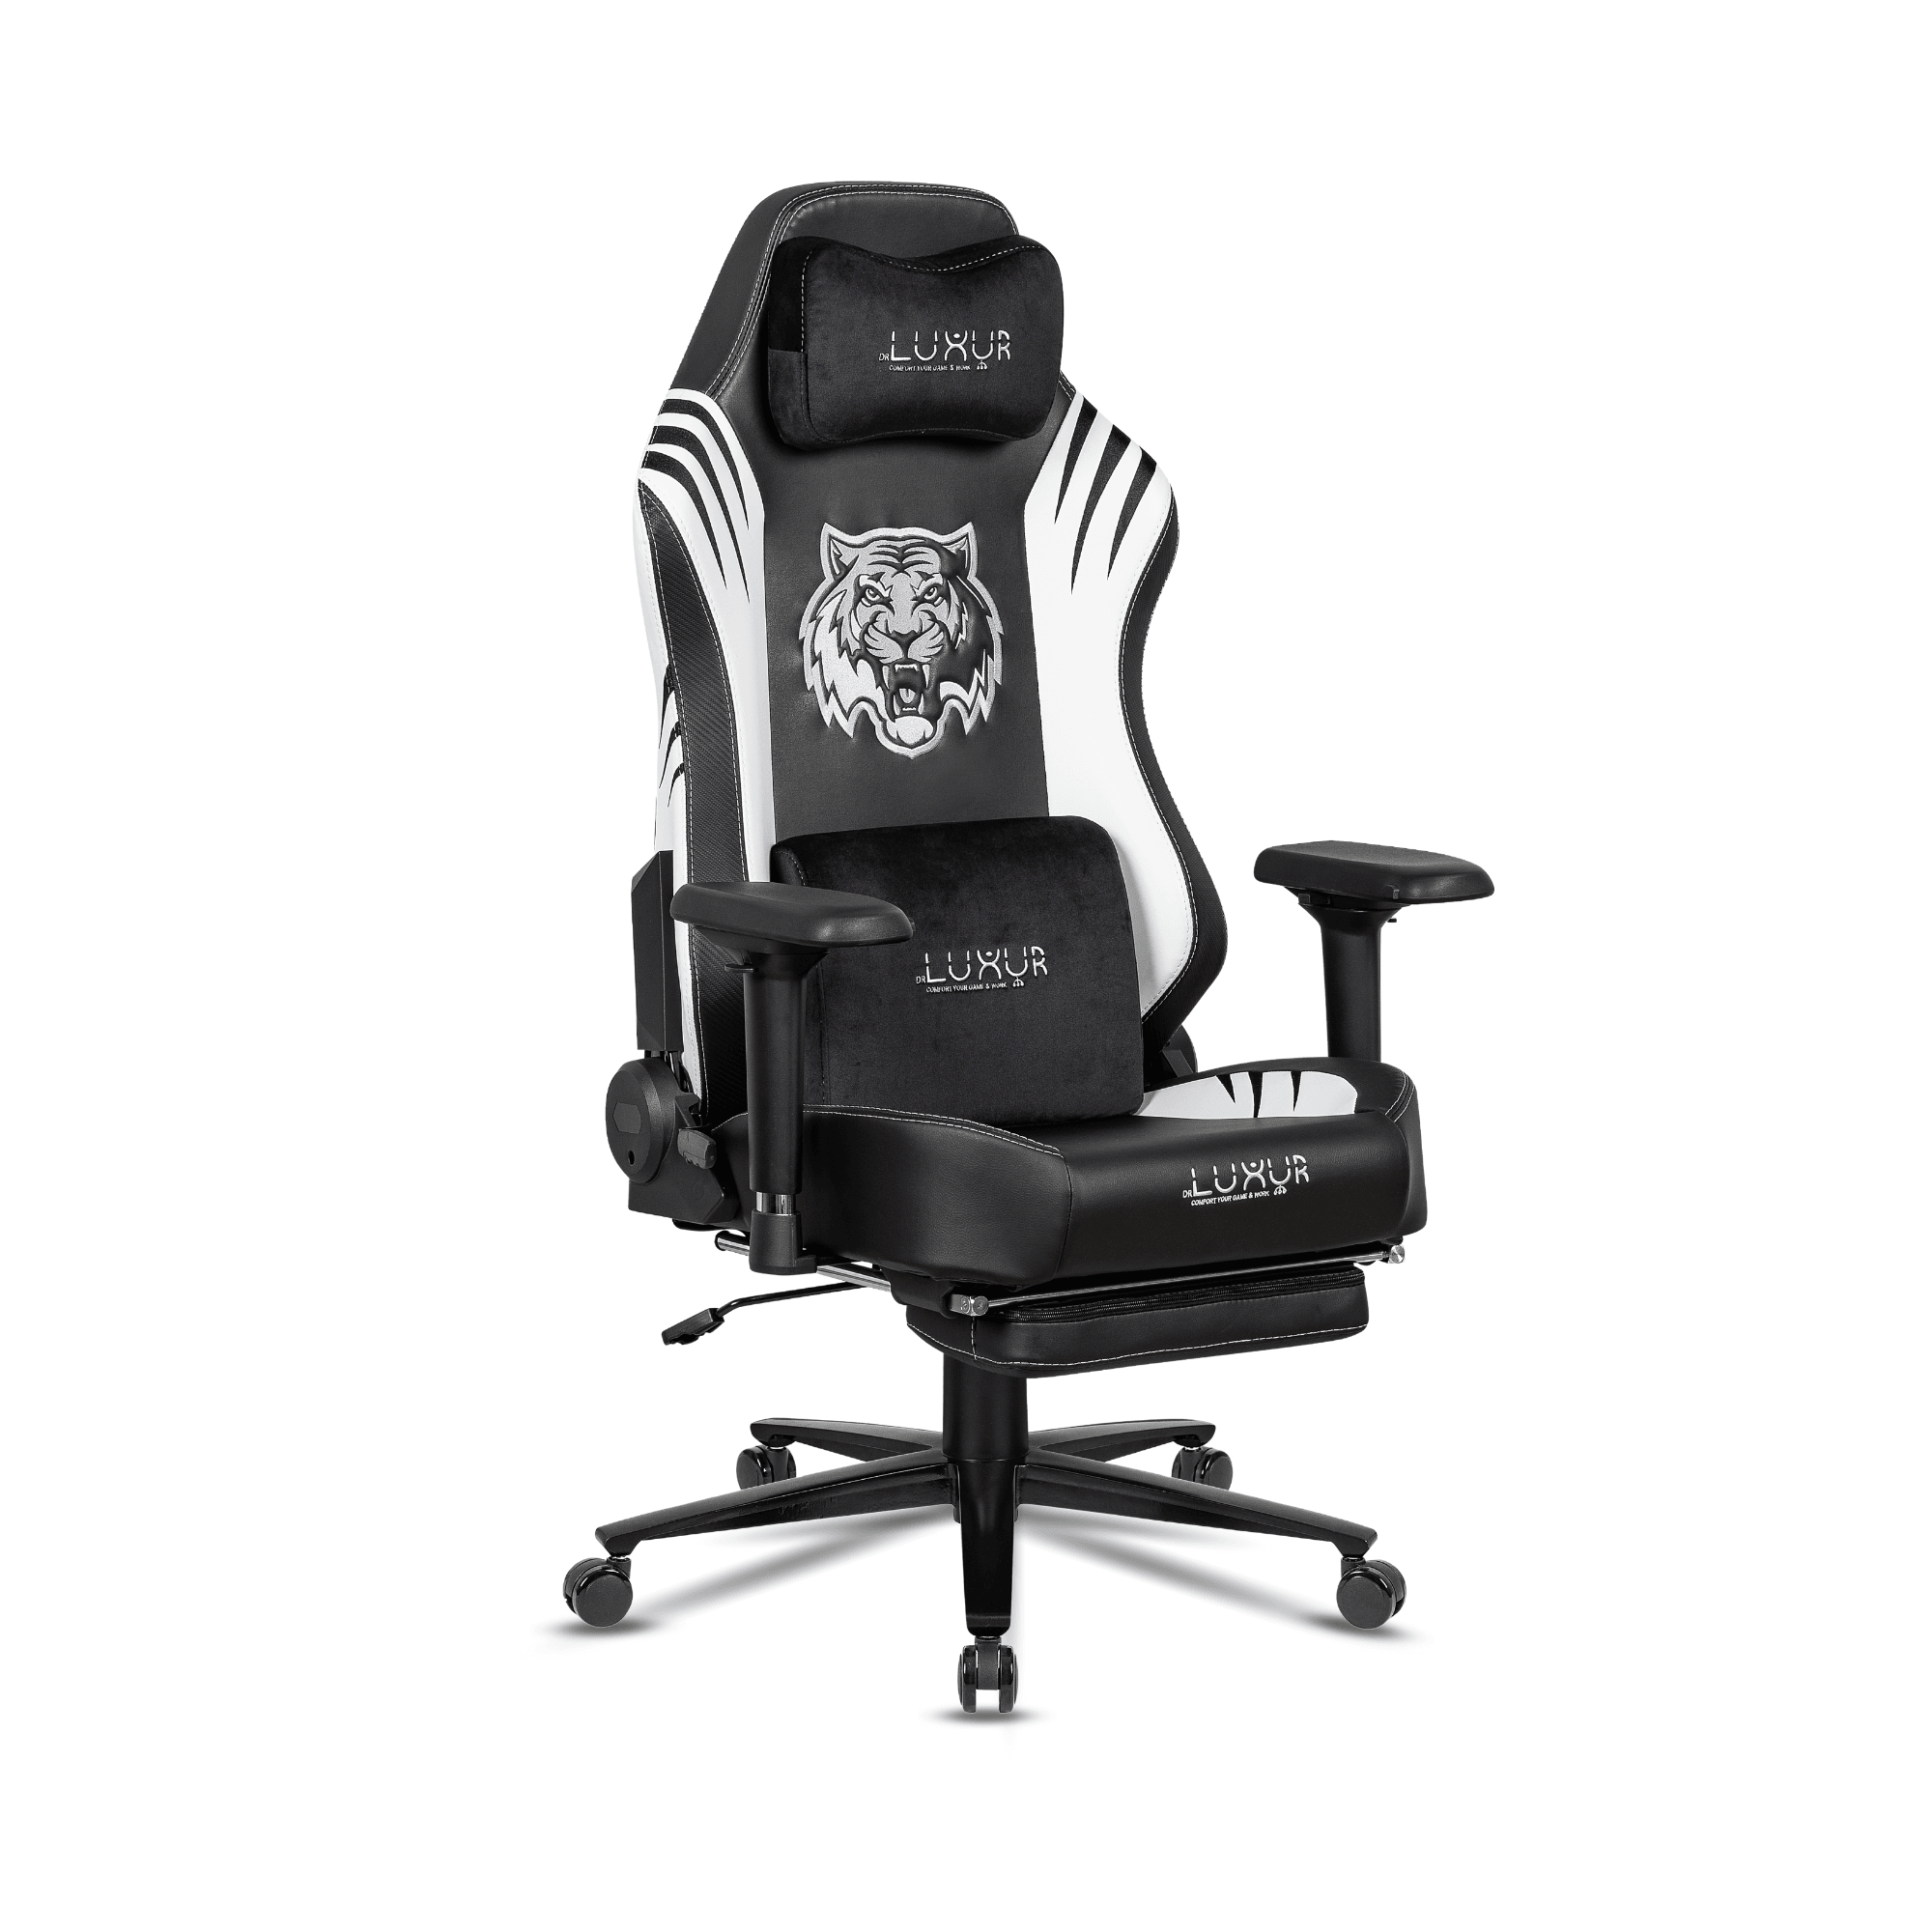 DrLuxur Predator Gaming Chair - DrLuxur